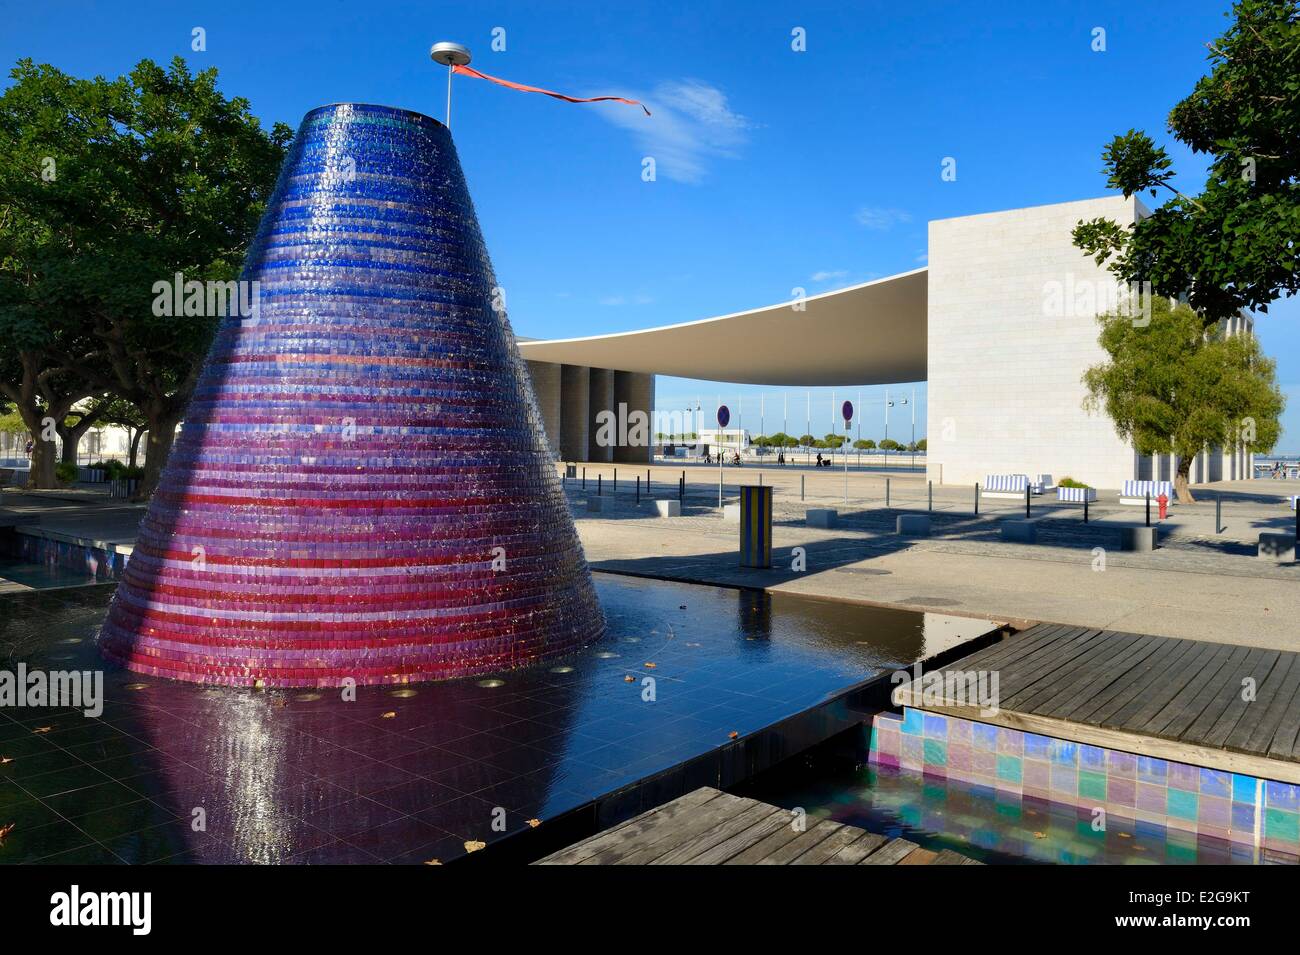 Portugal-Lissabon-Parque Das Nacoes (Park der Nationen) für die Weltausstellung Expo 98 Welt Brunnen gebaut Stockfoto